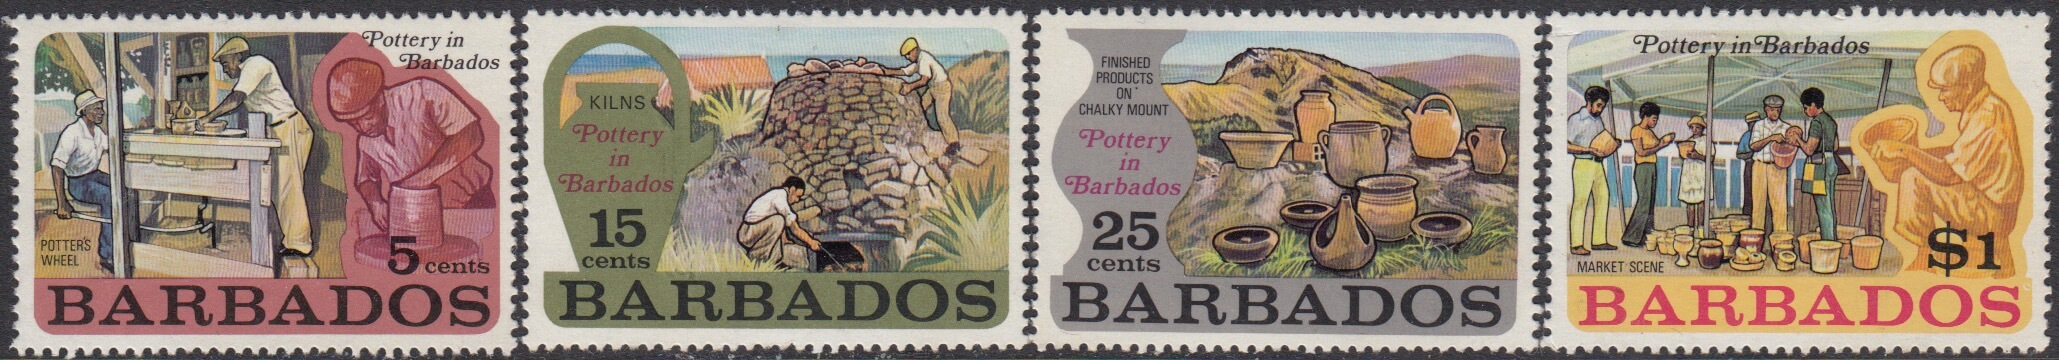 Barbados SG468-471 | Pottery in Barbados